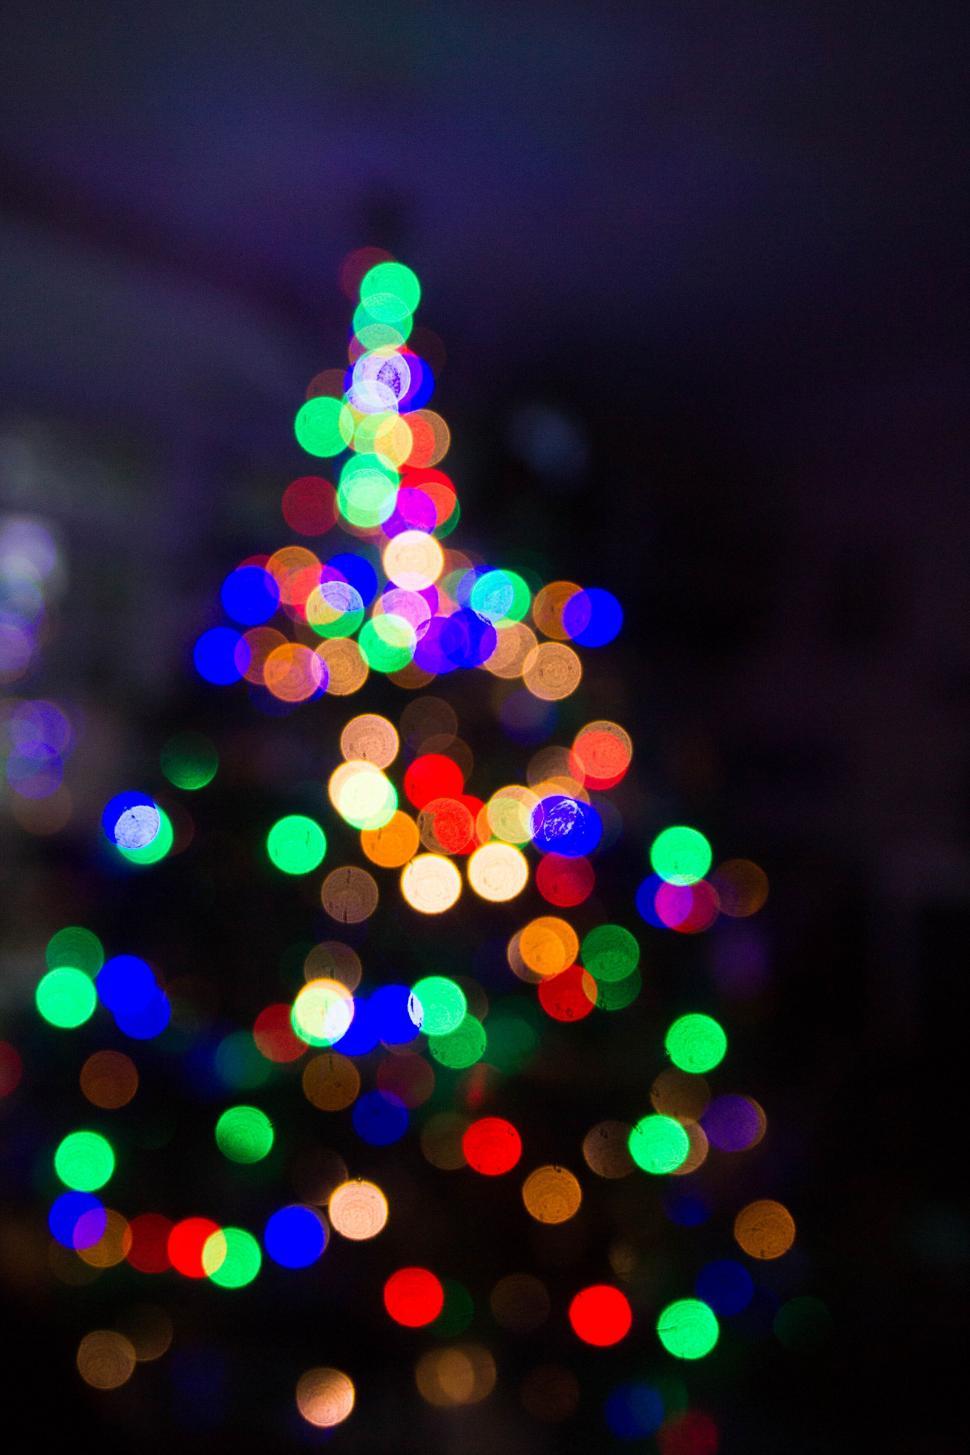 Free Image of Colorful bokeh lights of Christmas tree 